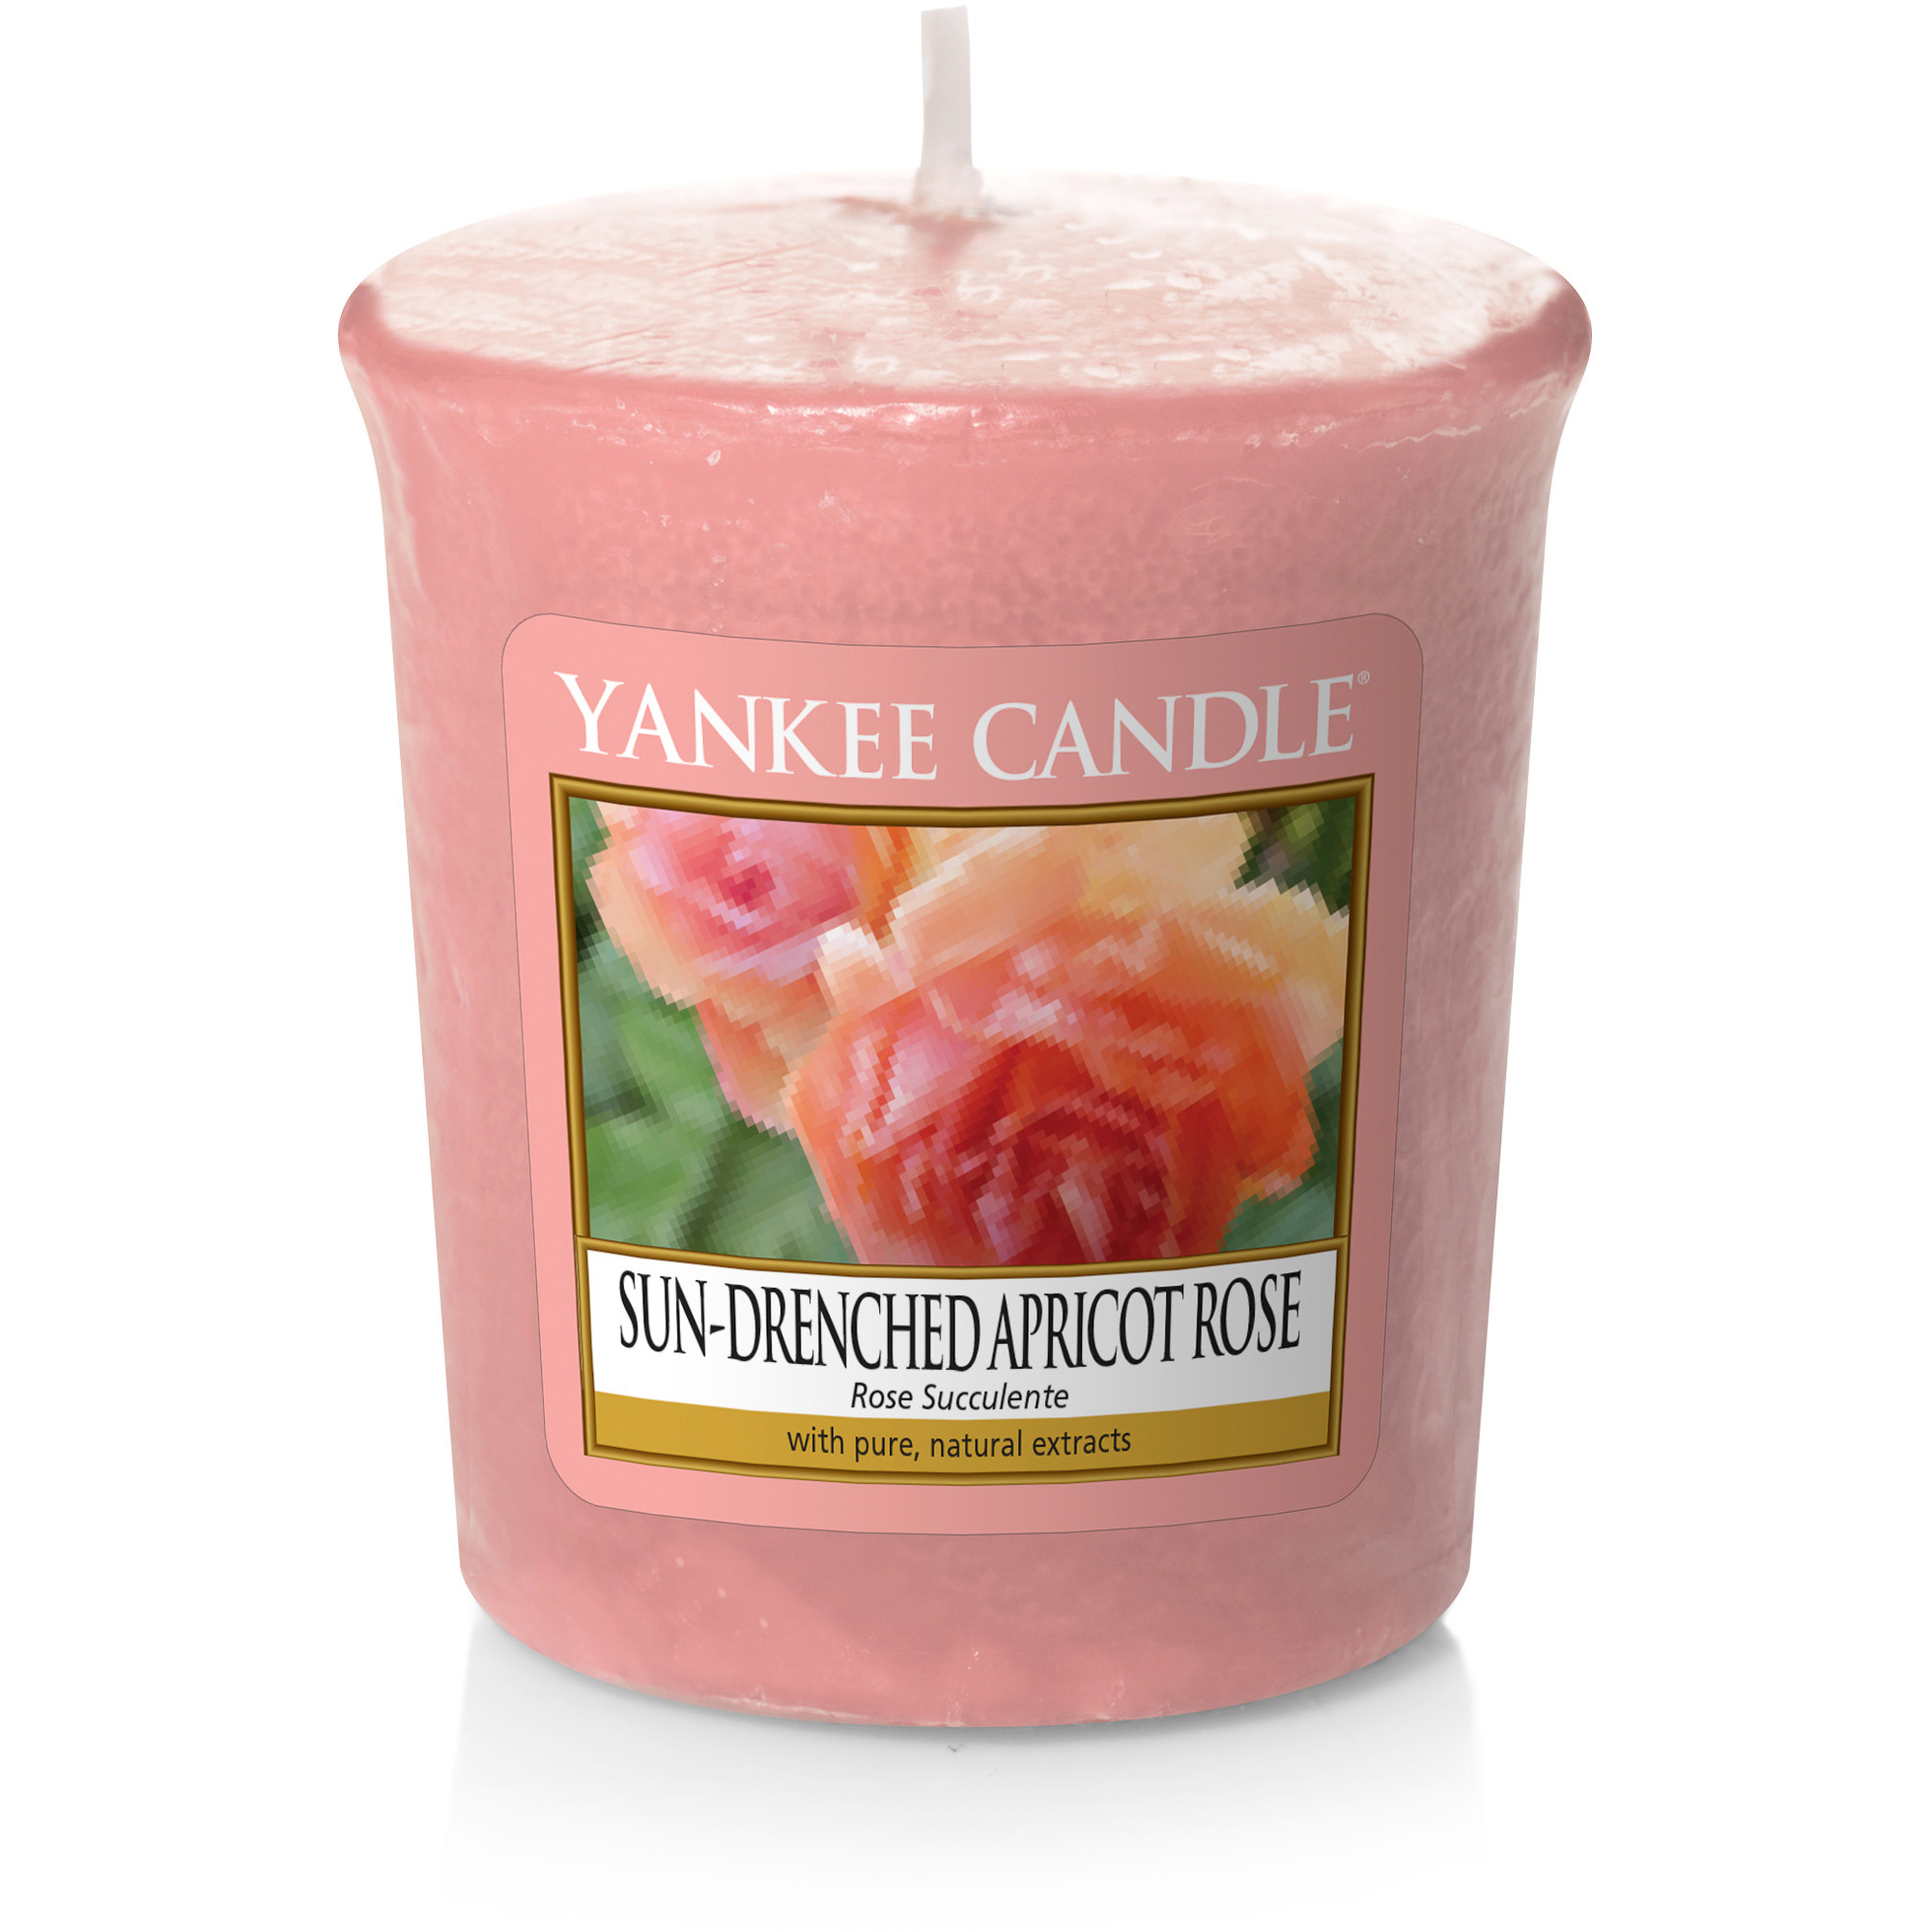 Аромасвеча для подсвечника Yankee candle Персиковая роза 49 г ок искусственный most flowers роза герцогиня кремово персиковая